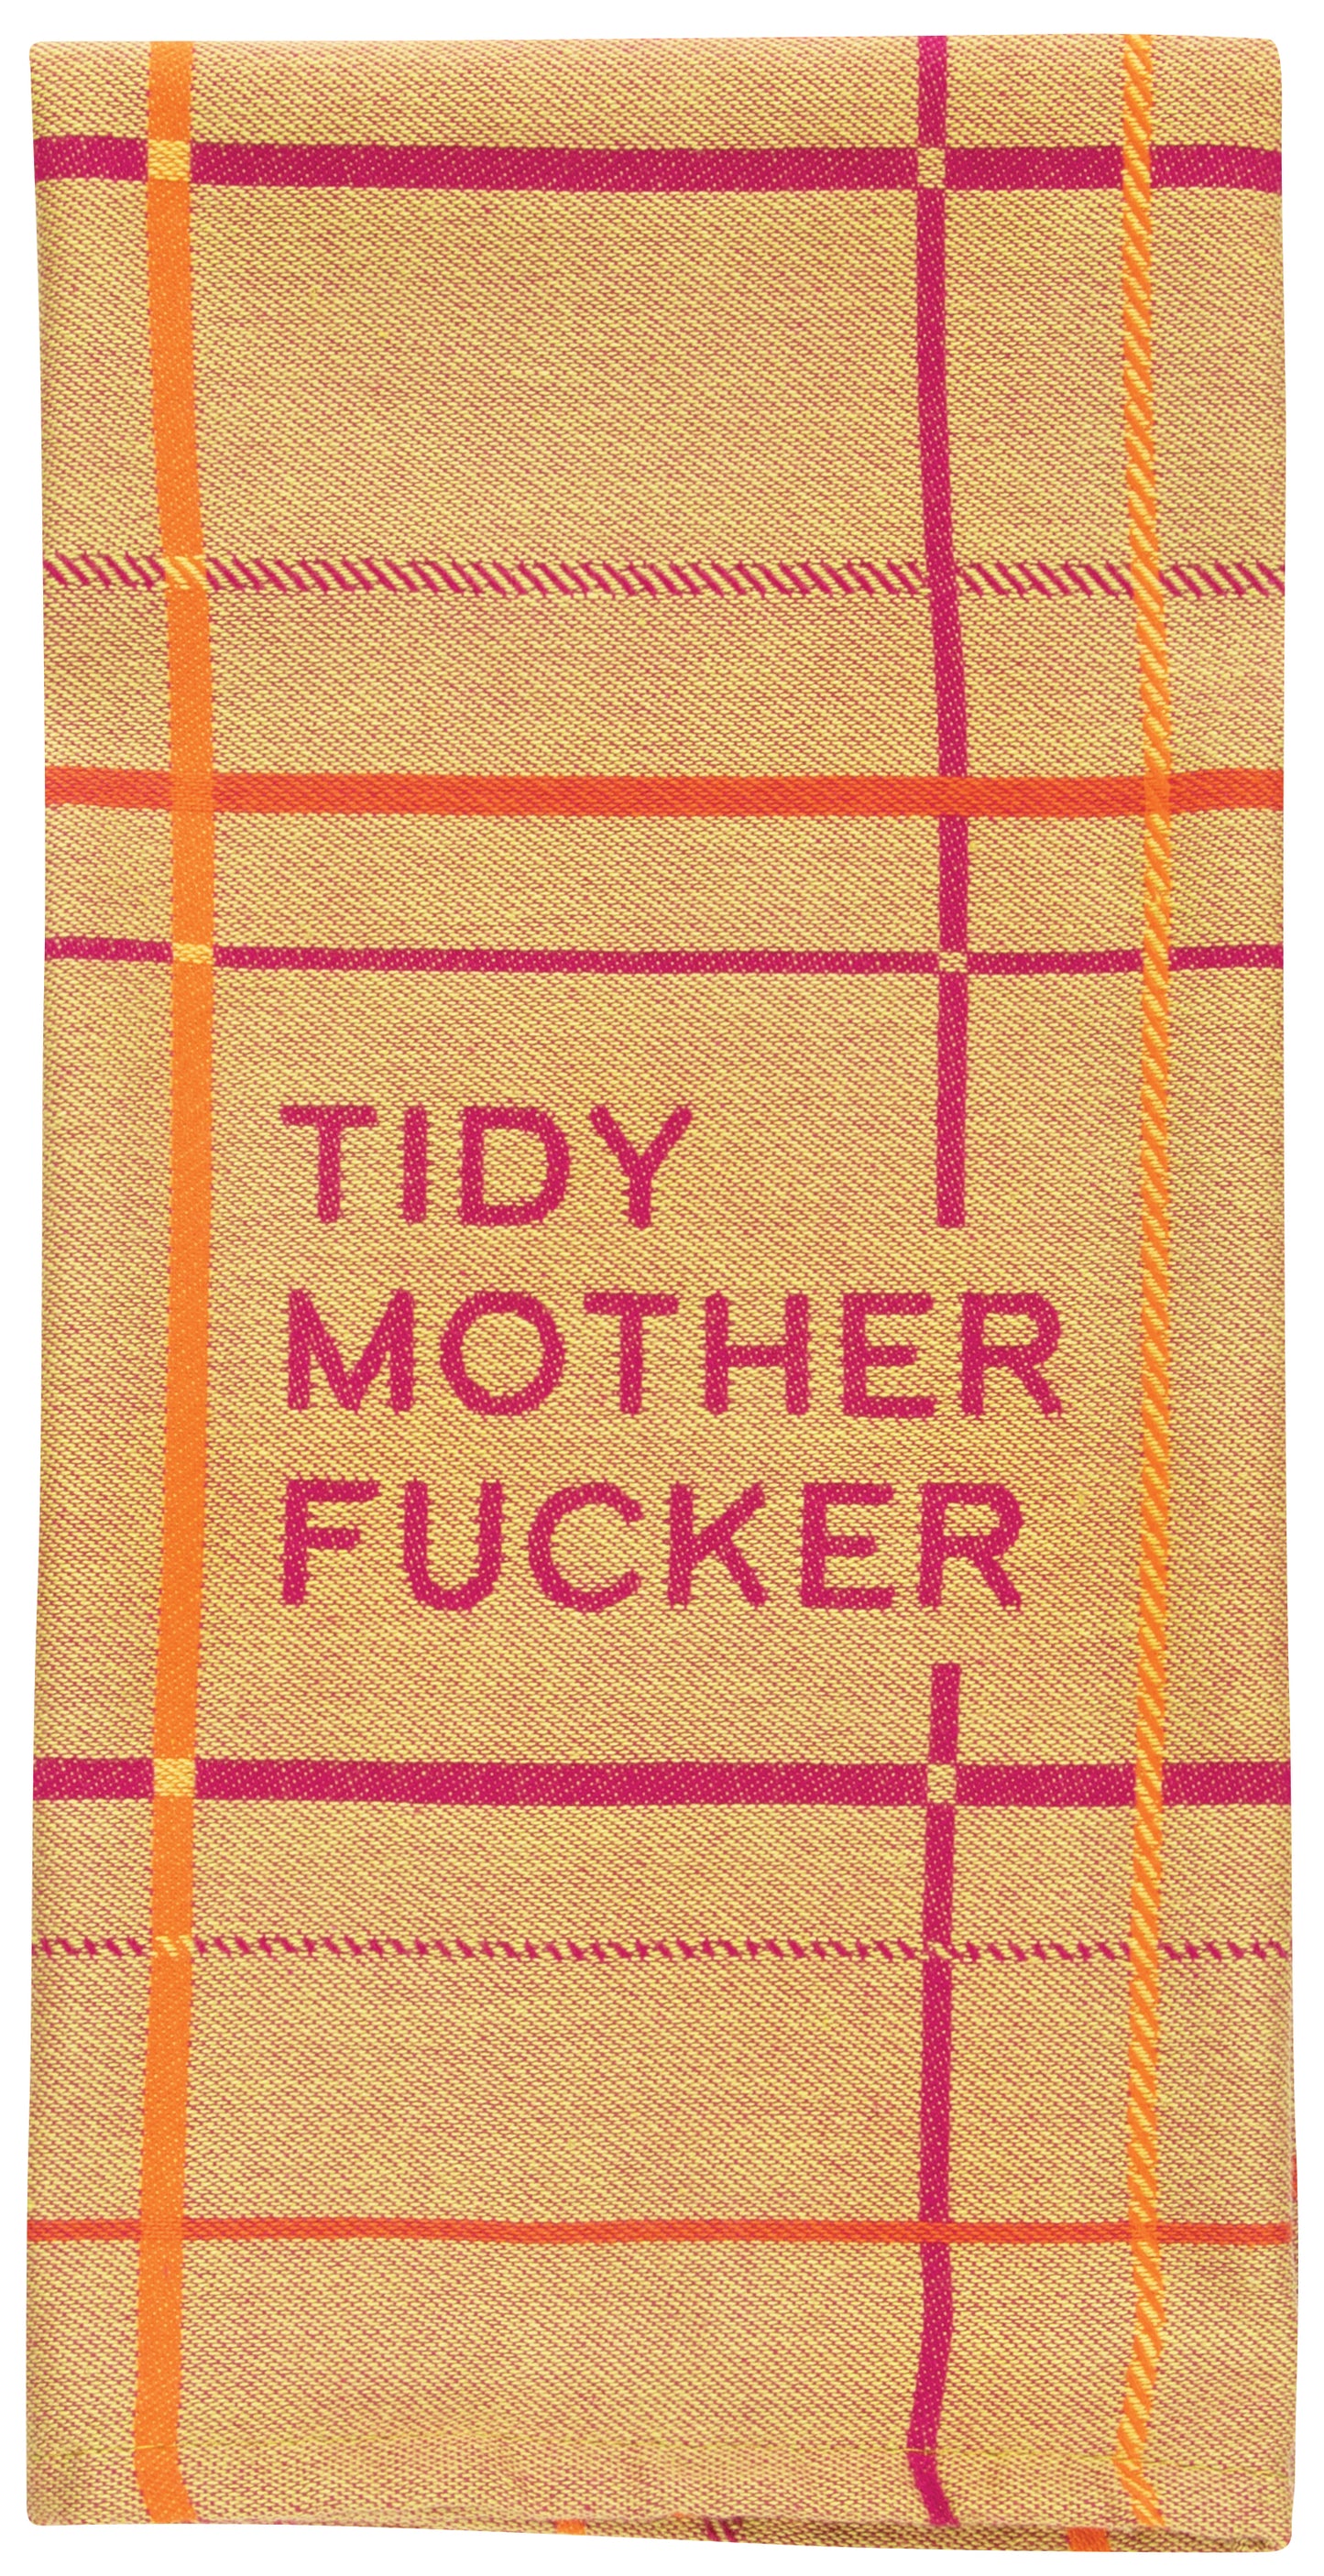 Heliotique Tidy Mother F****r Tea Towel